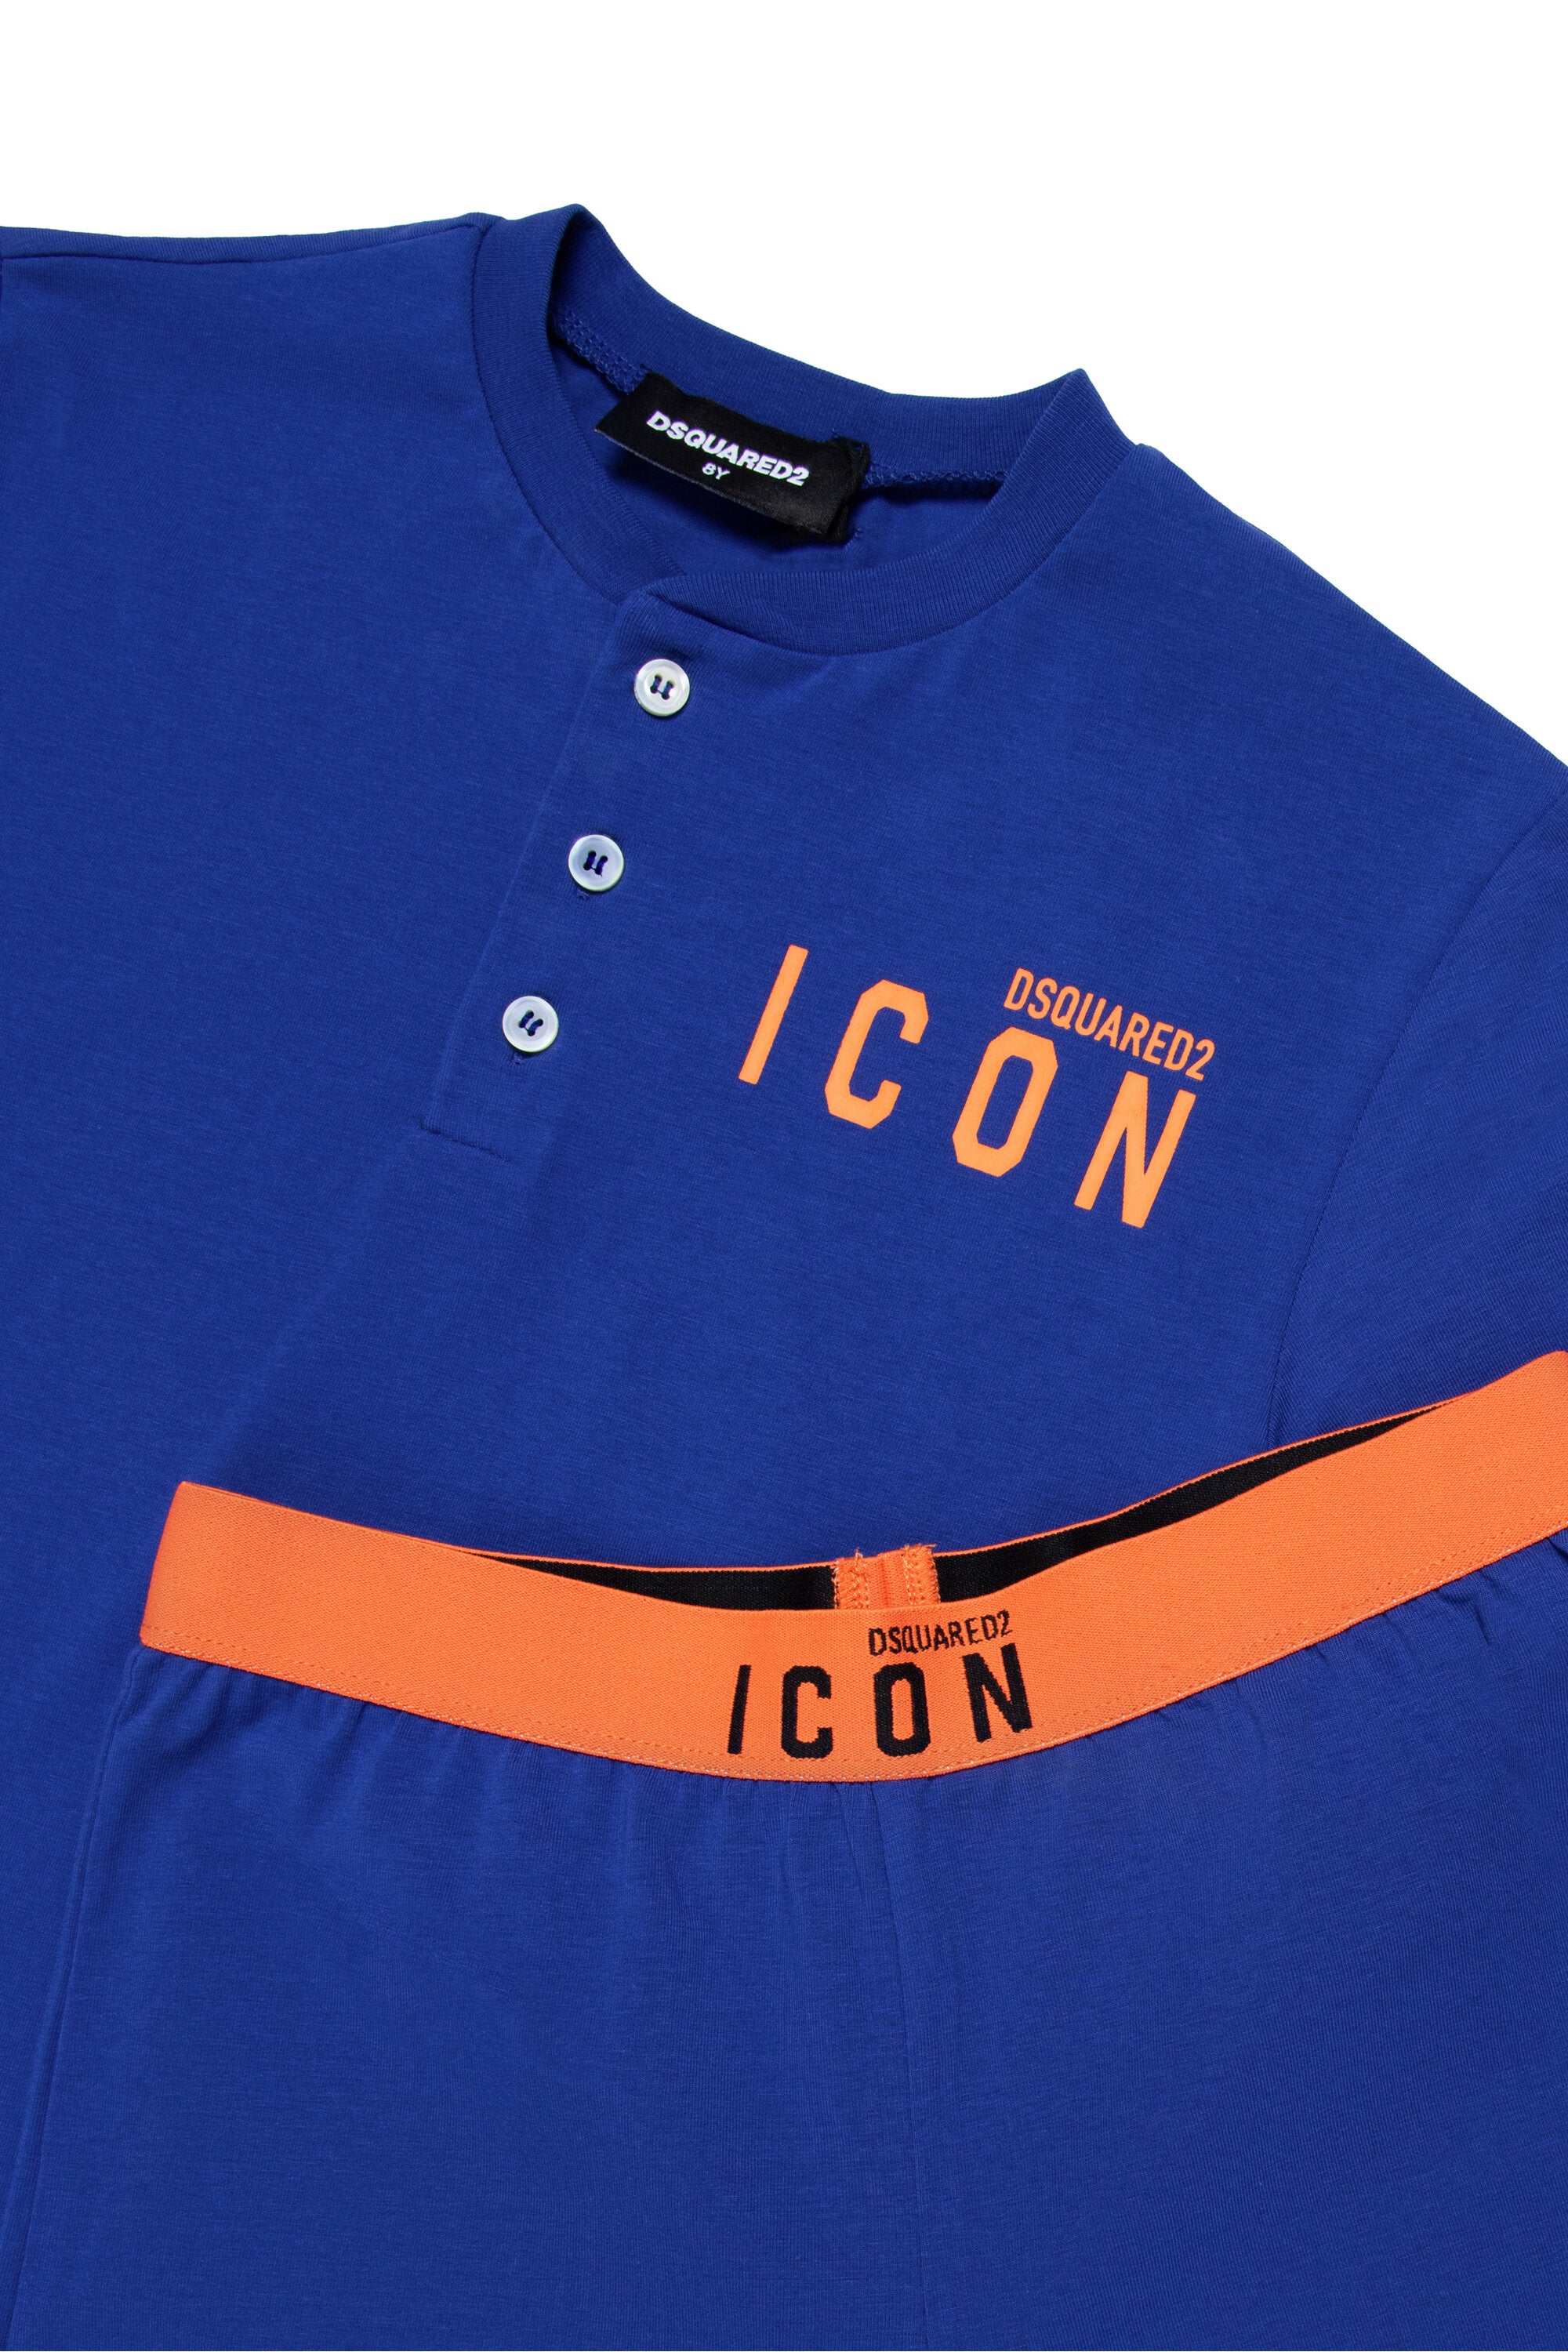 Pijamas cortos de jersey con logotipo ICON